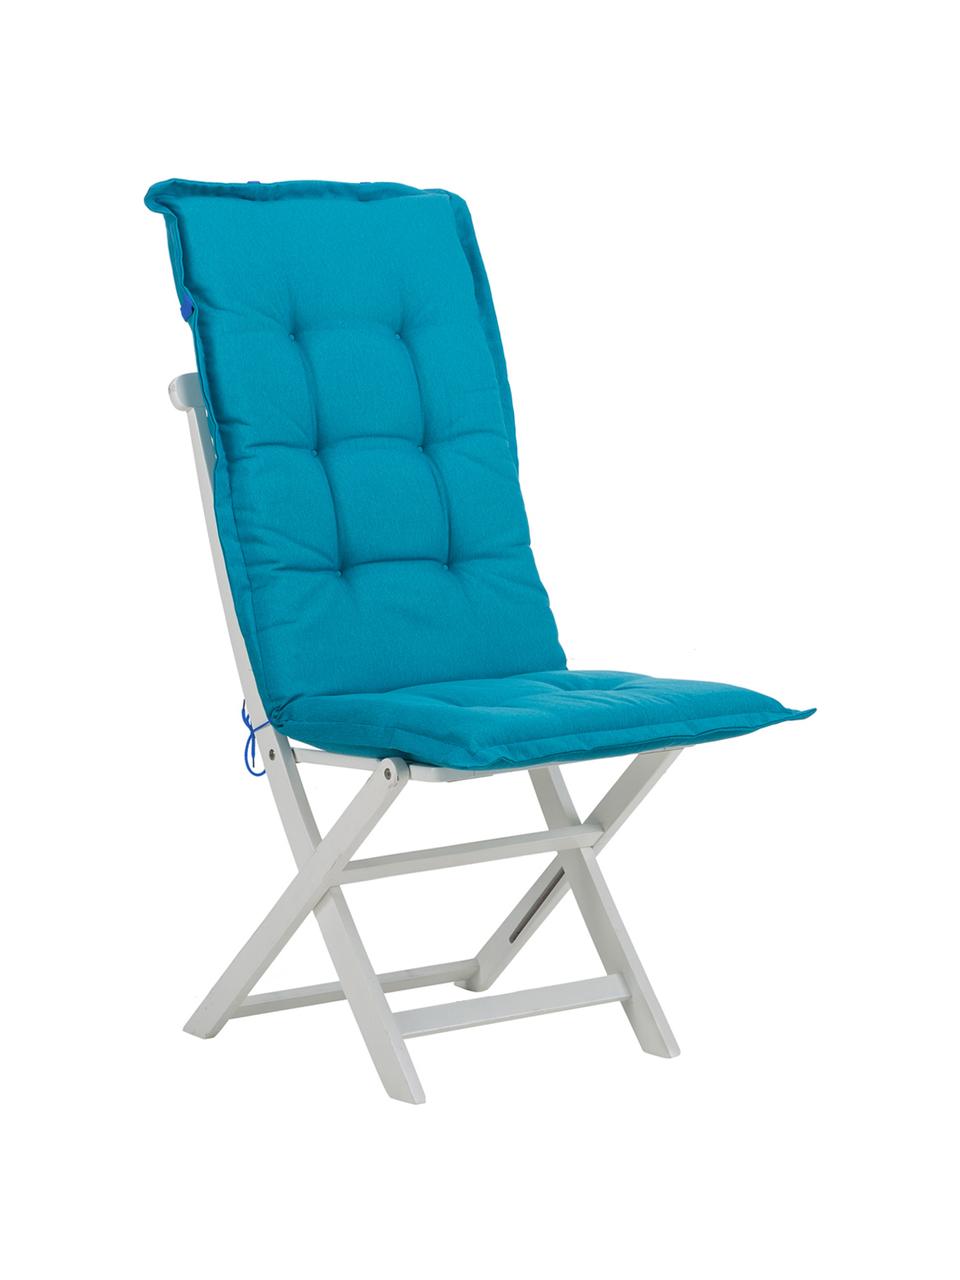 Poduszka na krzesło z oparciem Panama, Tapicerka: 50% bawełna, 50% polieste, Turkusowoniebieski, S 50 x D 123 cm